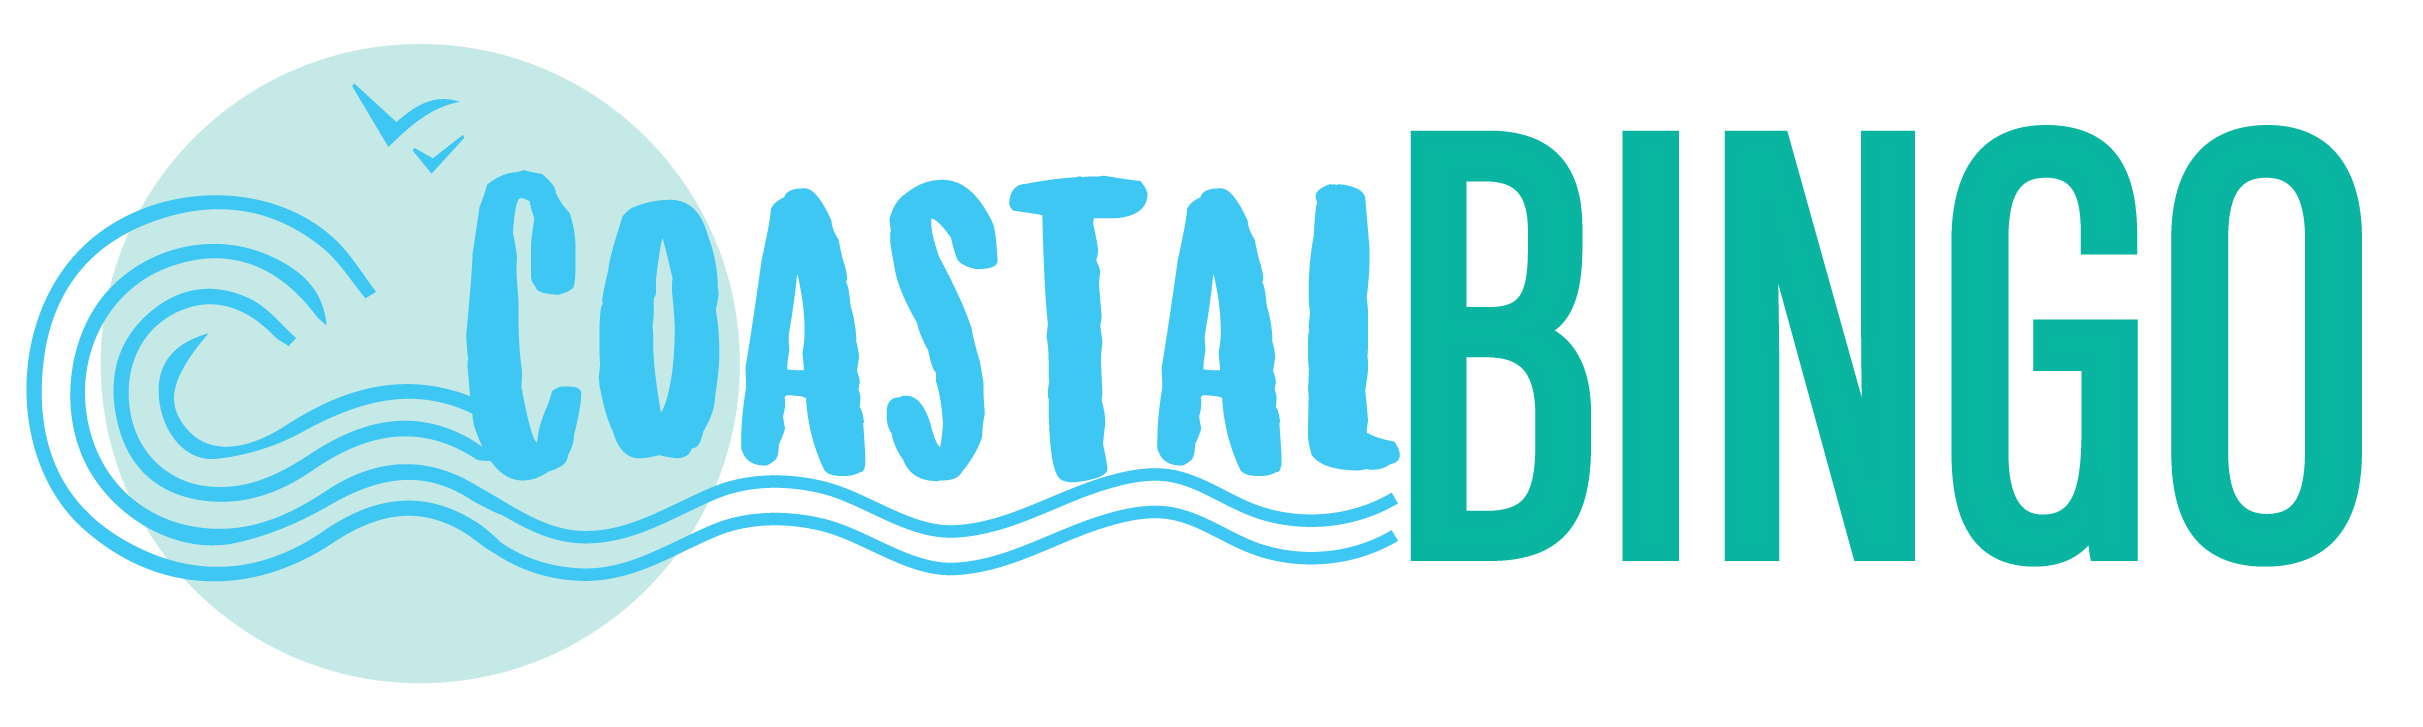 Coastal Bingo logo